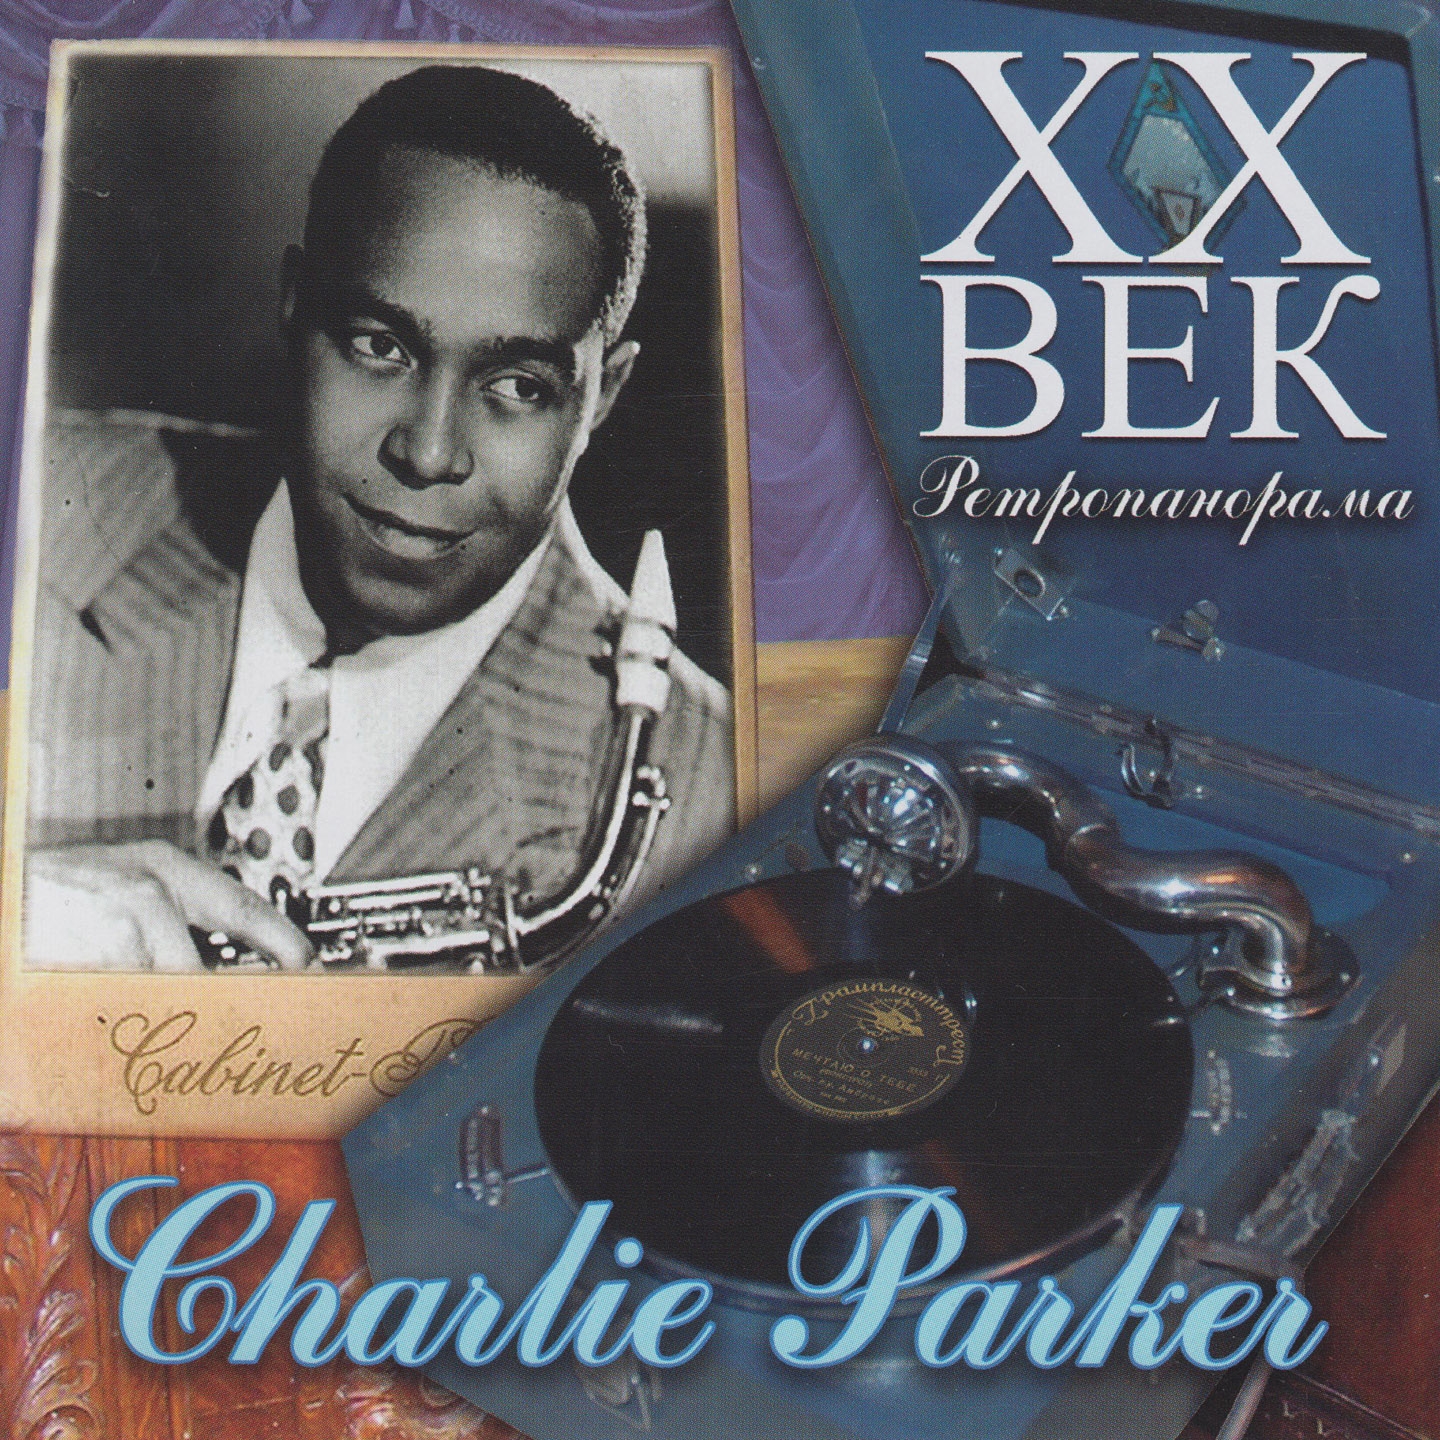 Charlie Parker  X